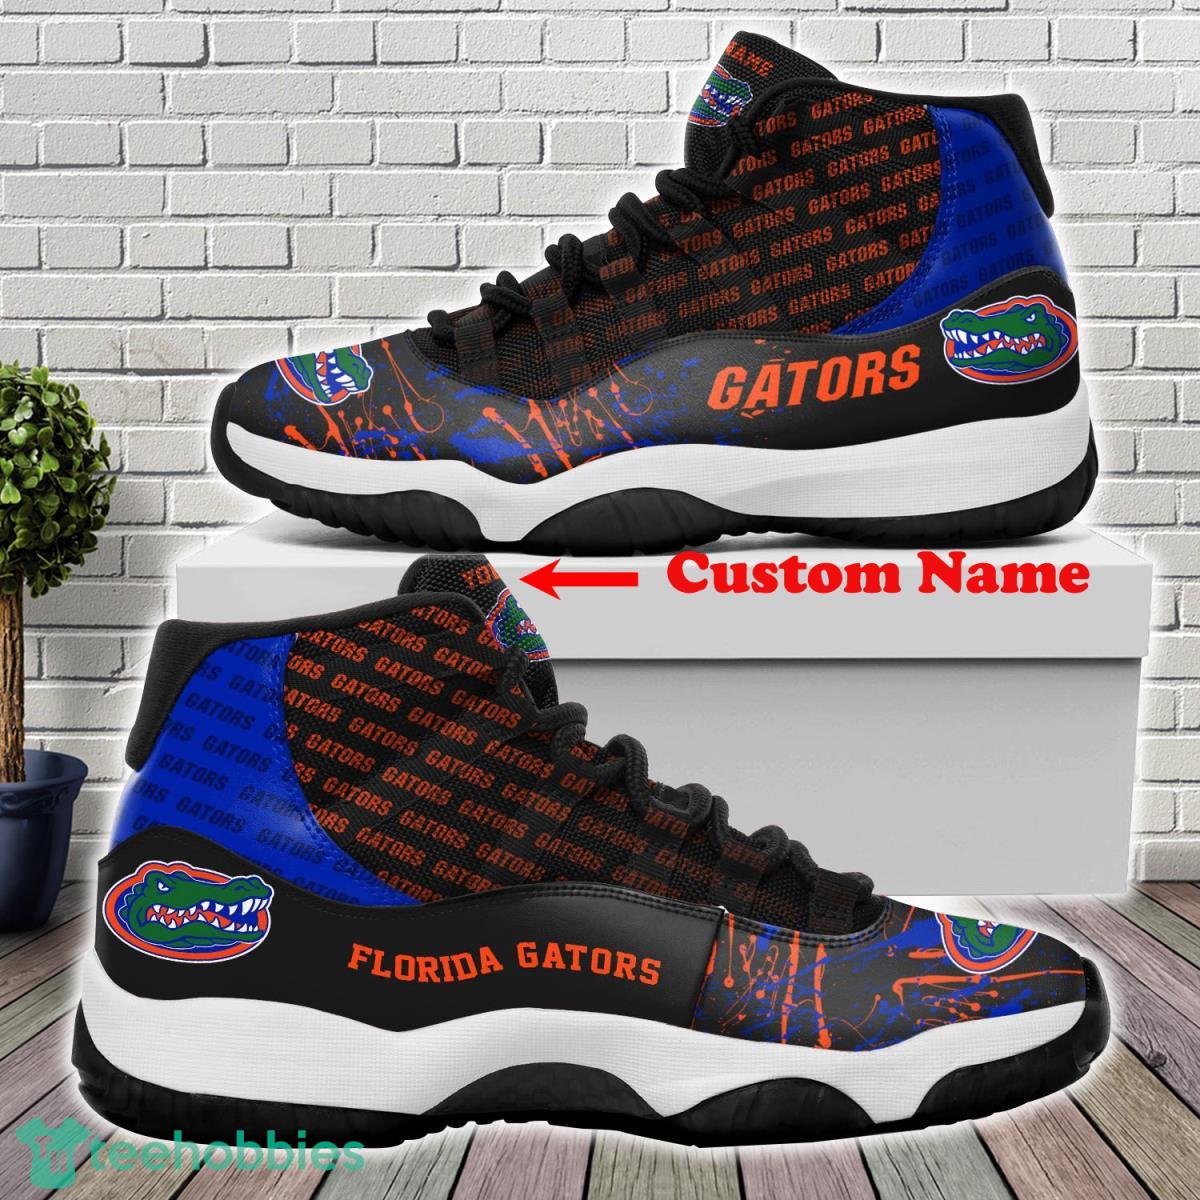 Florida Gators Custom Name Air Jordan 11 Sneakers For Fans Product Photo 1